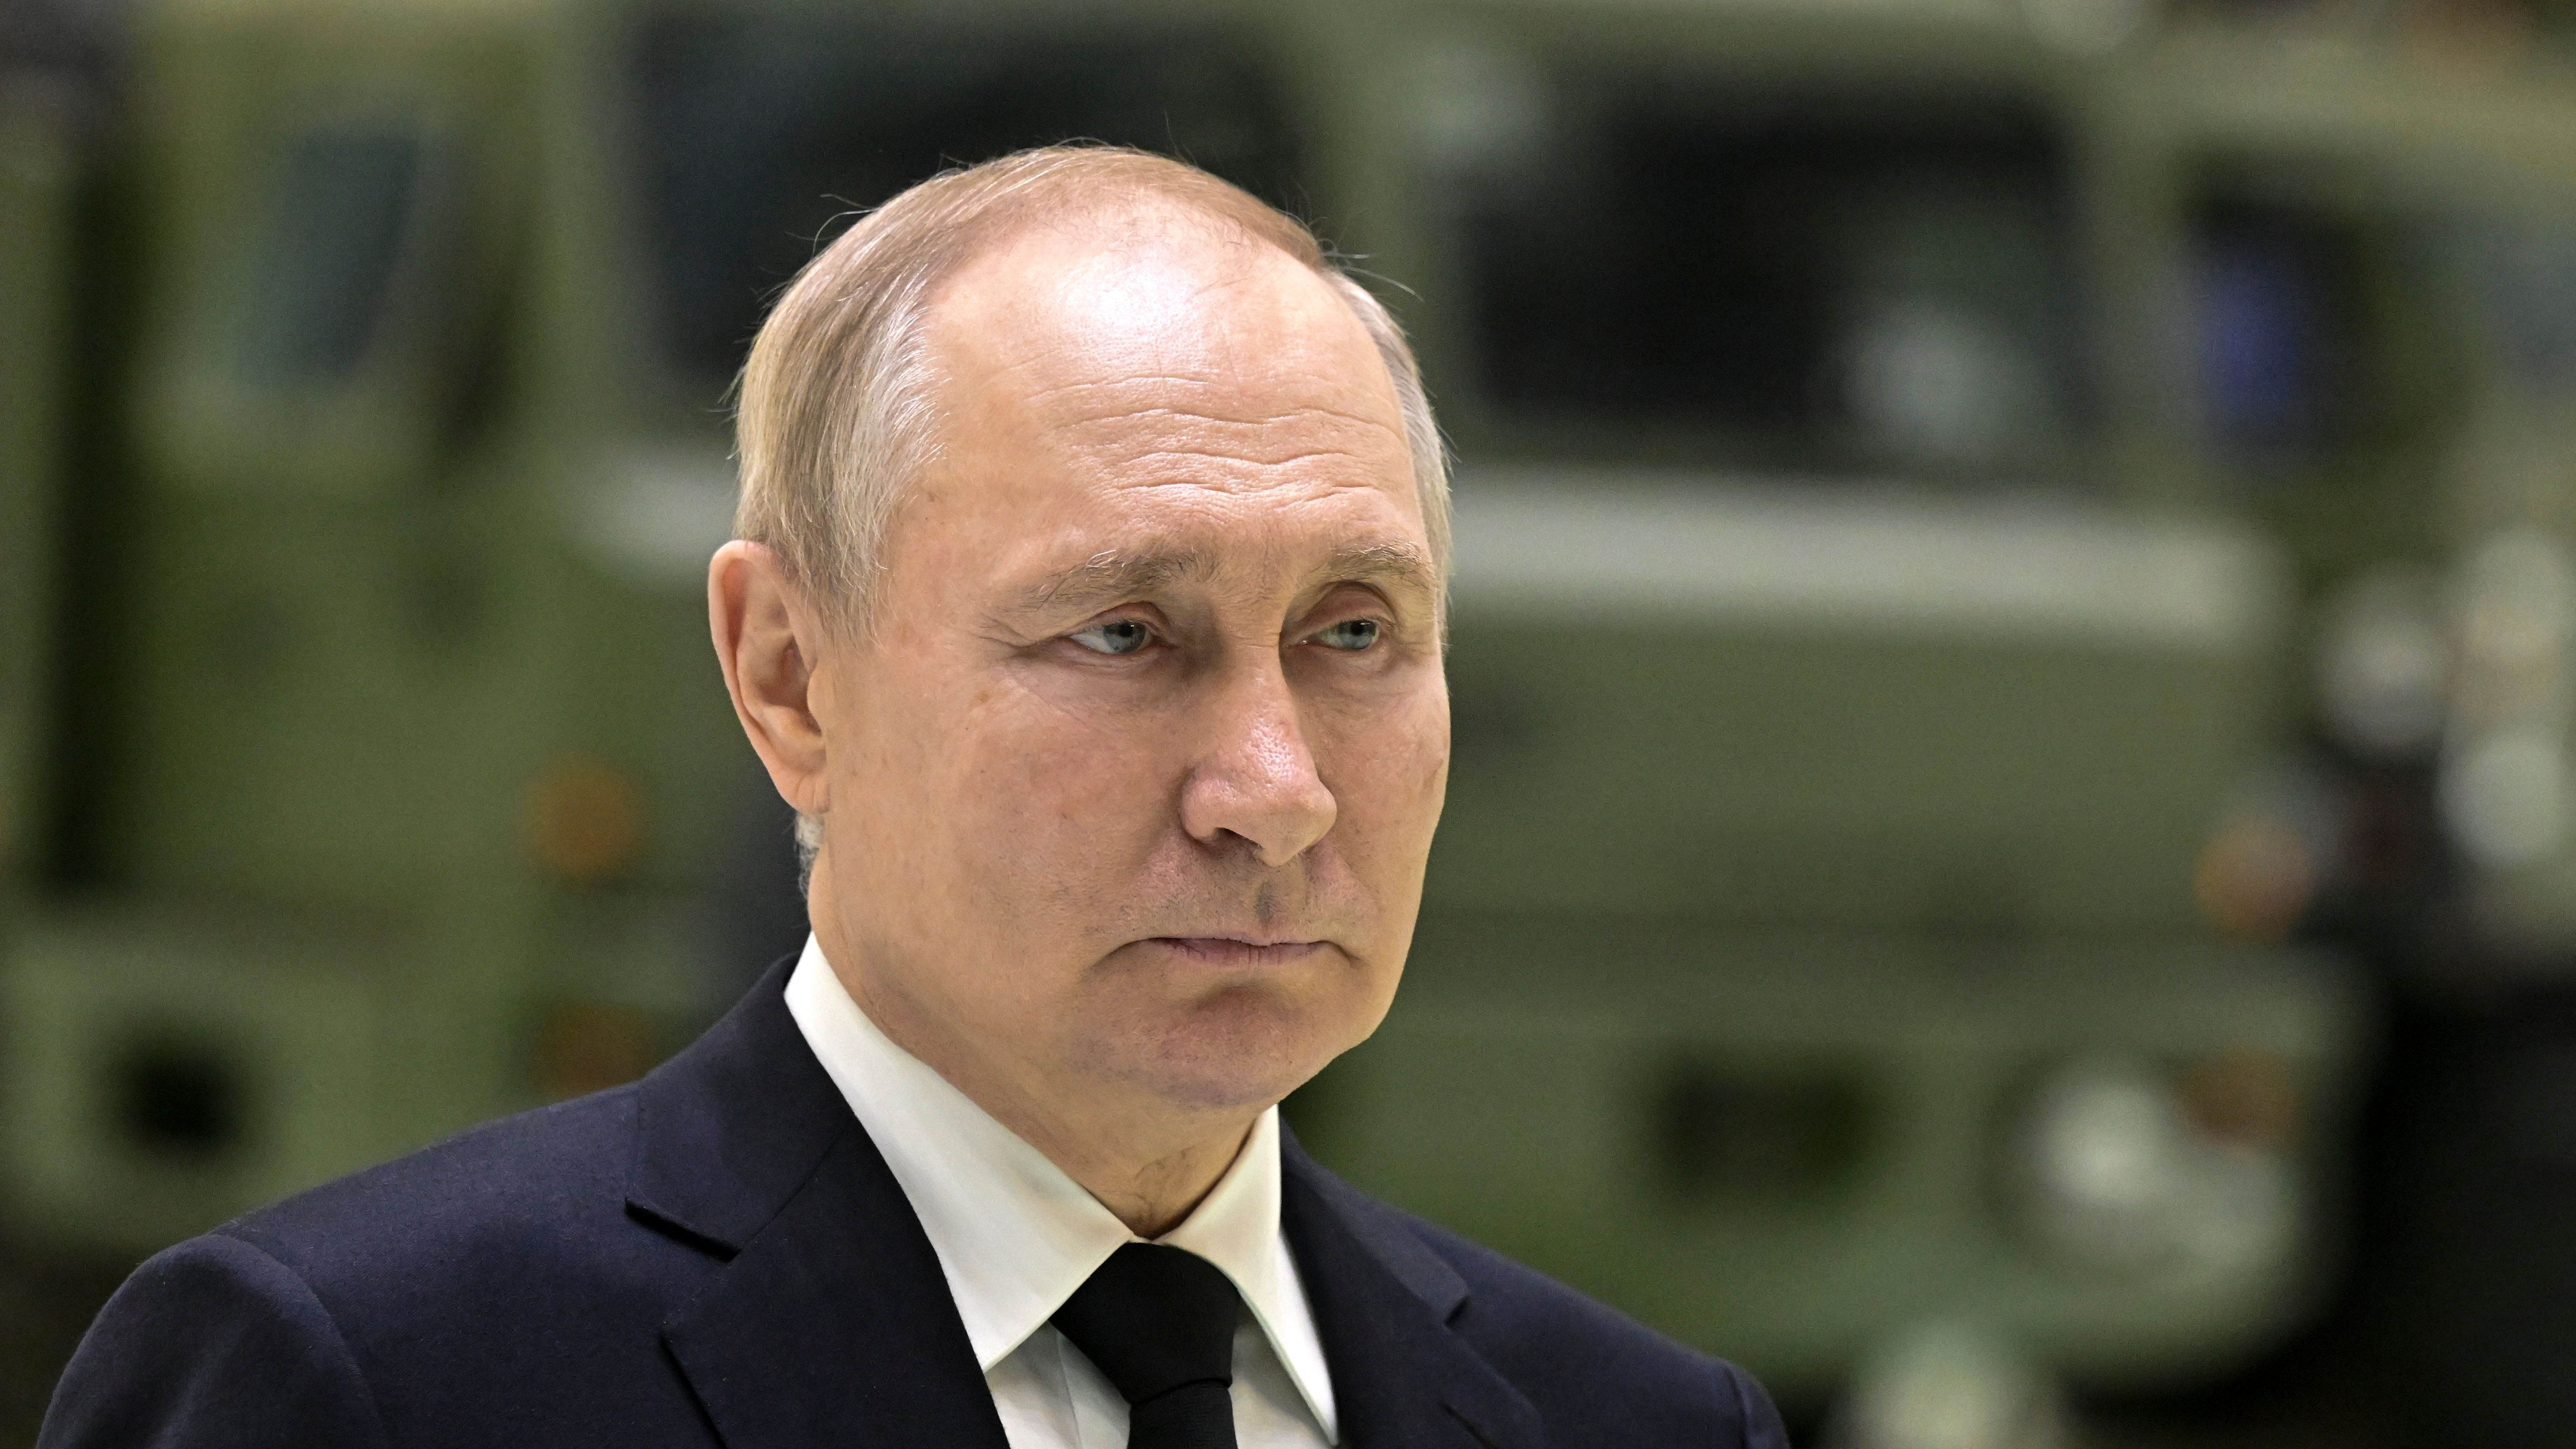 Wenn Putin nicht gehindert wird, macht er weiter mit seiner Aggression. Auch über die Ukraine hinaus.